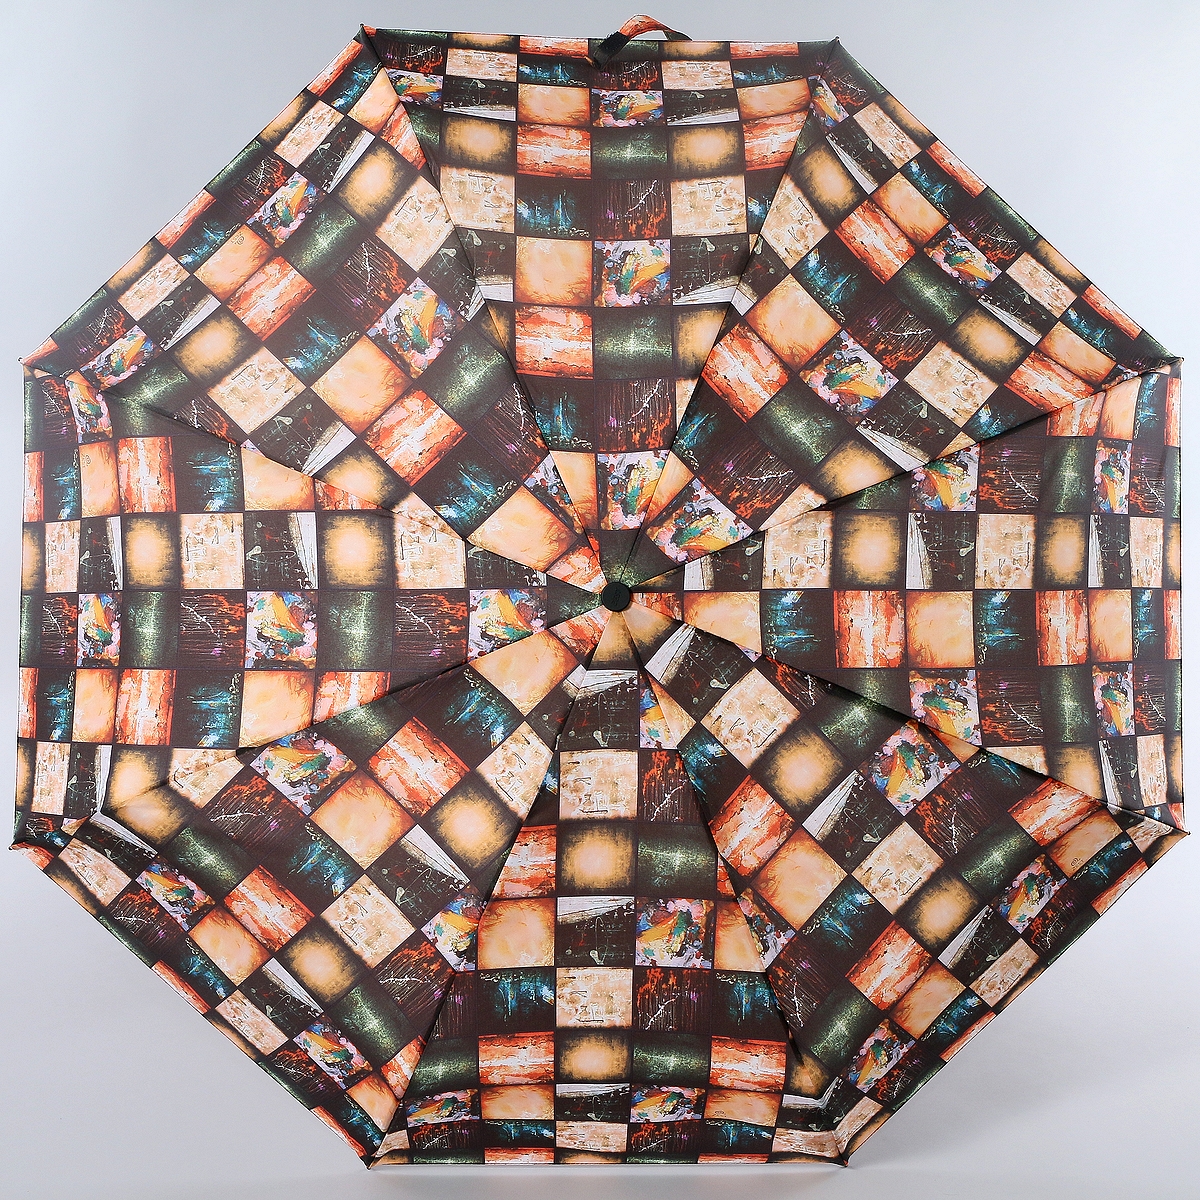 Зонт женский Zest, автомат, 4 сложения, цвет: коричневый, бежевый, зеленый. 24665-2107